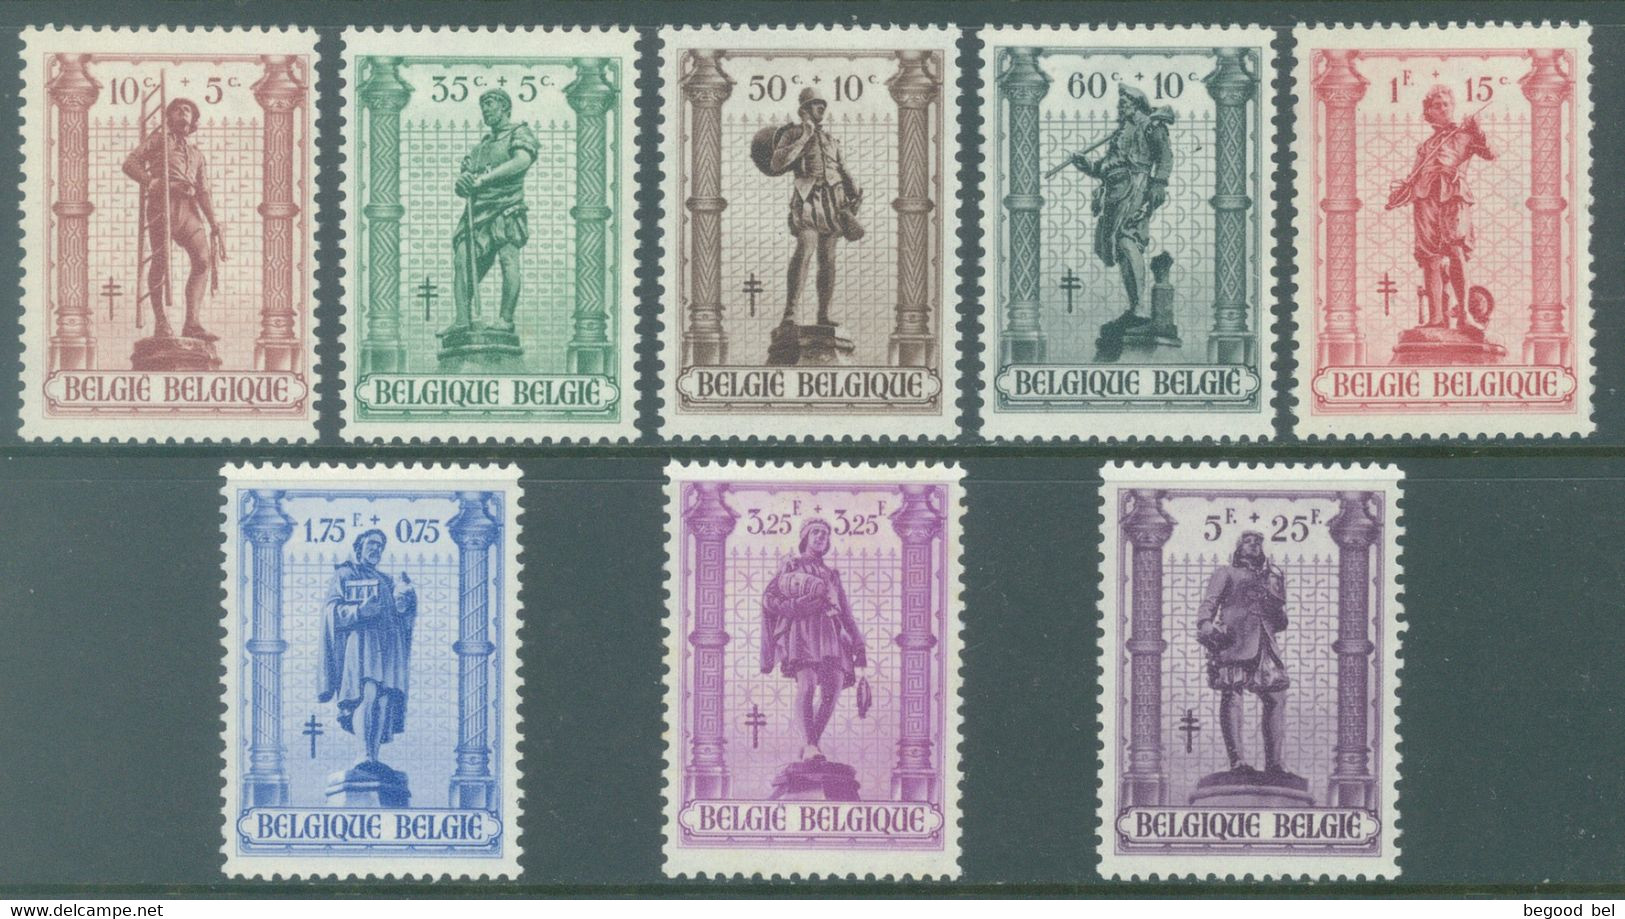 BELGIQUE - 1943 - MNH/*** LUXE - ANTITUBERCULEUX "LES METIERS" SABLON - COB 615 - 622 -  Lot 26044 - Unused Stamps